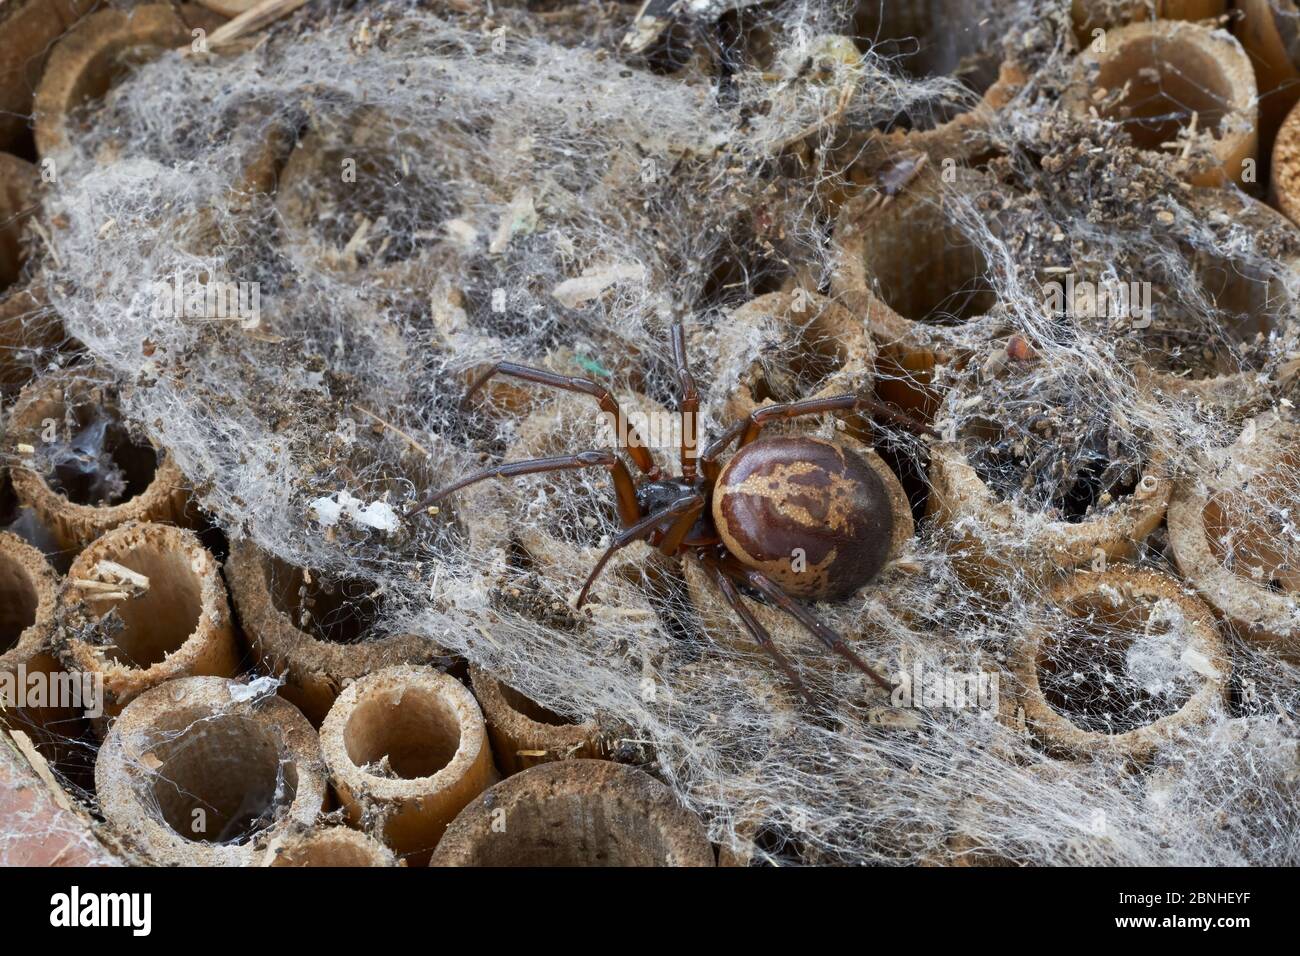 Falso ragno vedova nero (Steatoda nobilis) il ragno più velenoso trovato in Gran Bretagna - importato nel paese, probabilmente da Isole Canarie, Sussex Foto Stock